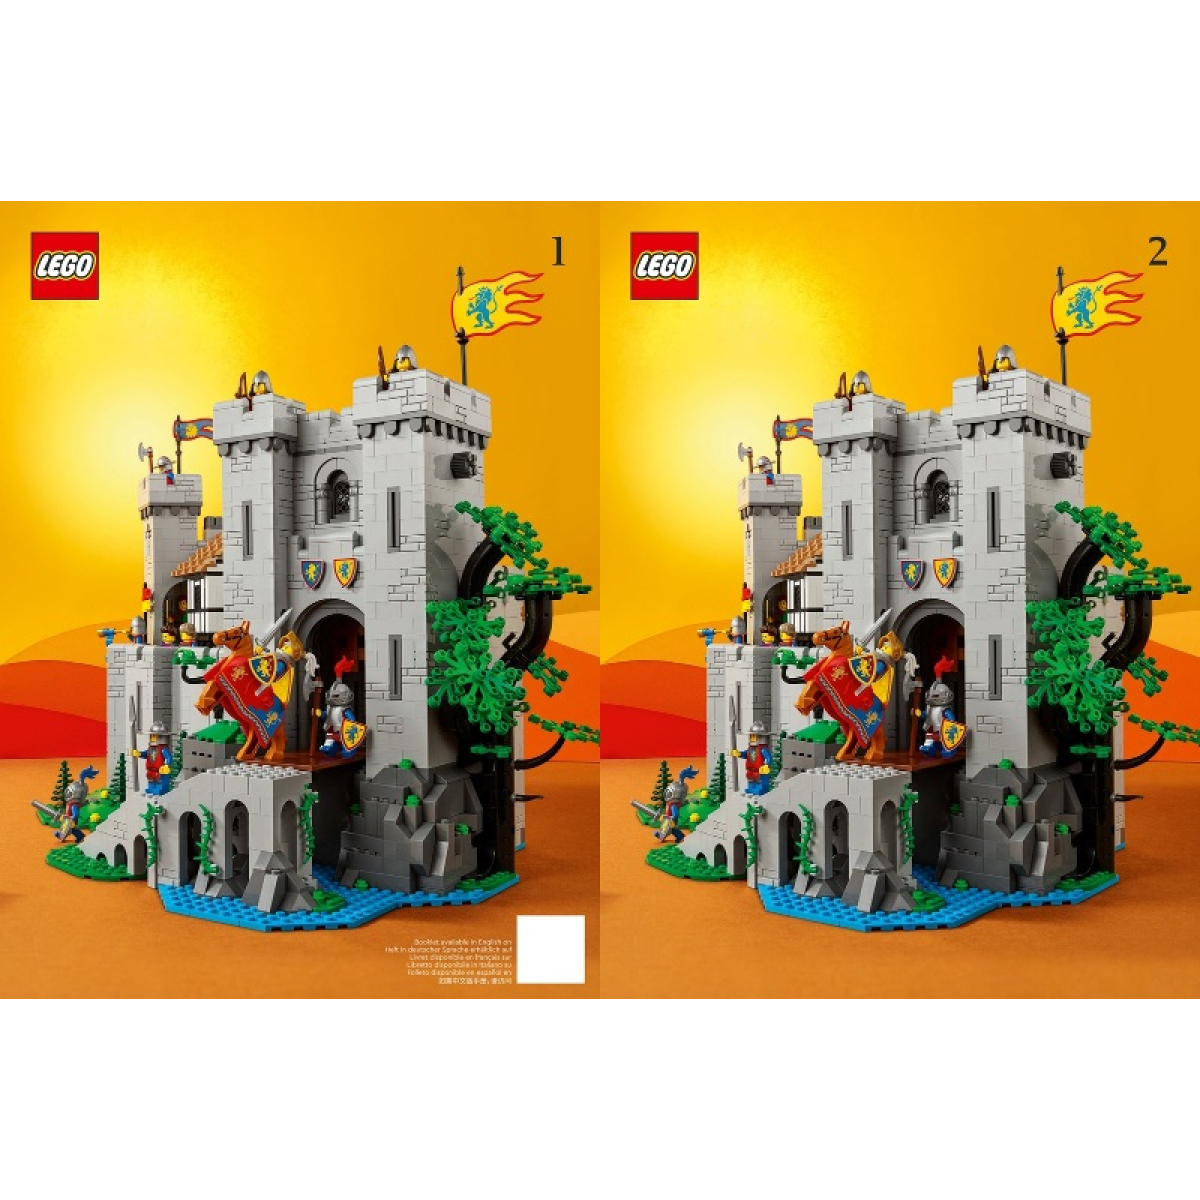 Passion Lego, Le bonheur de sortir de l'âge des ténèbres